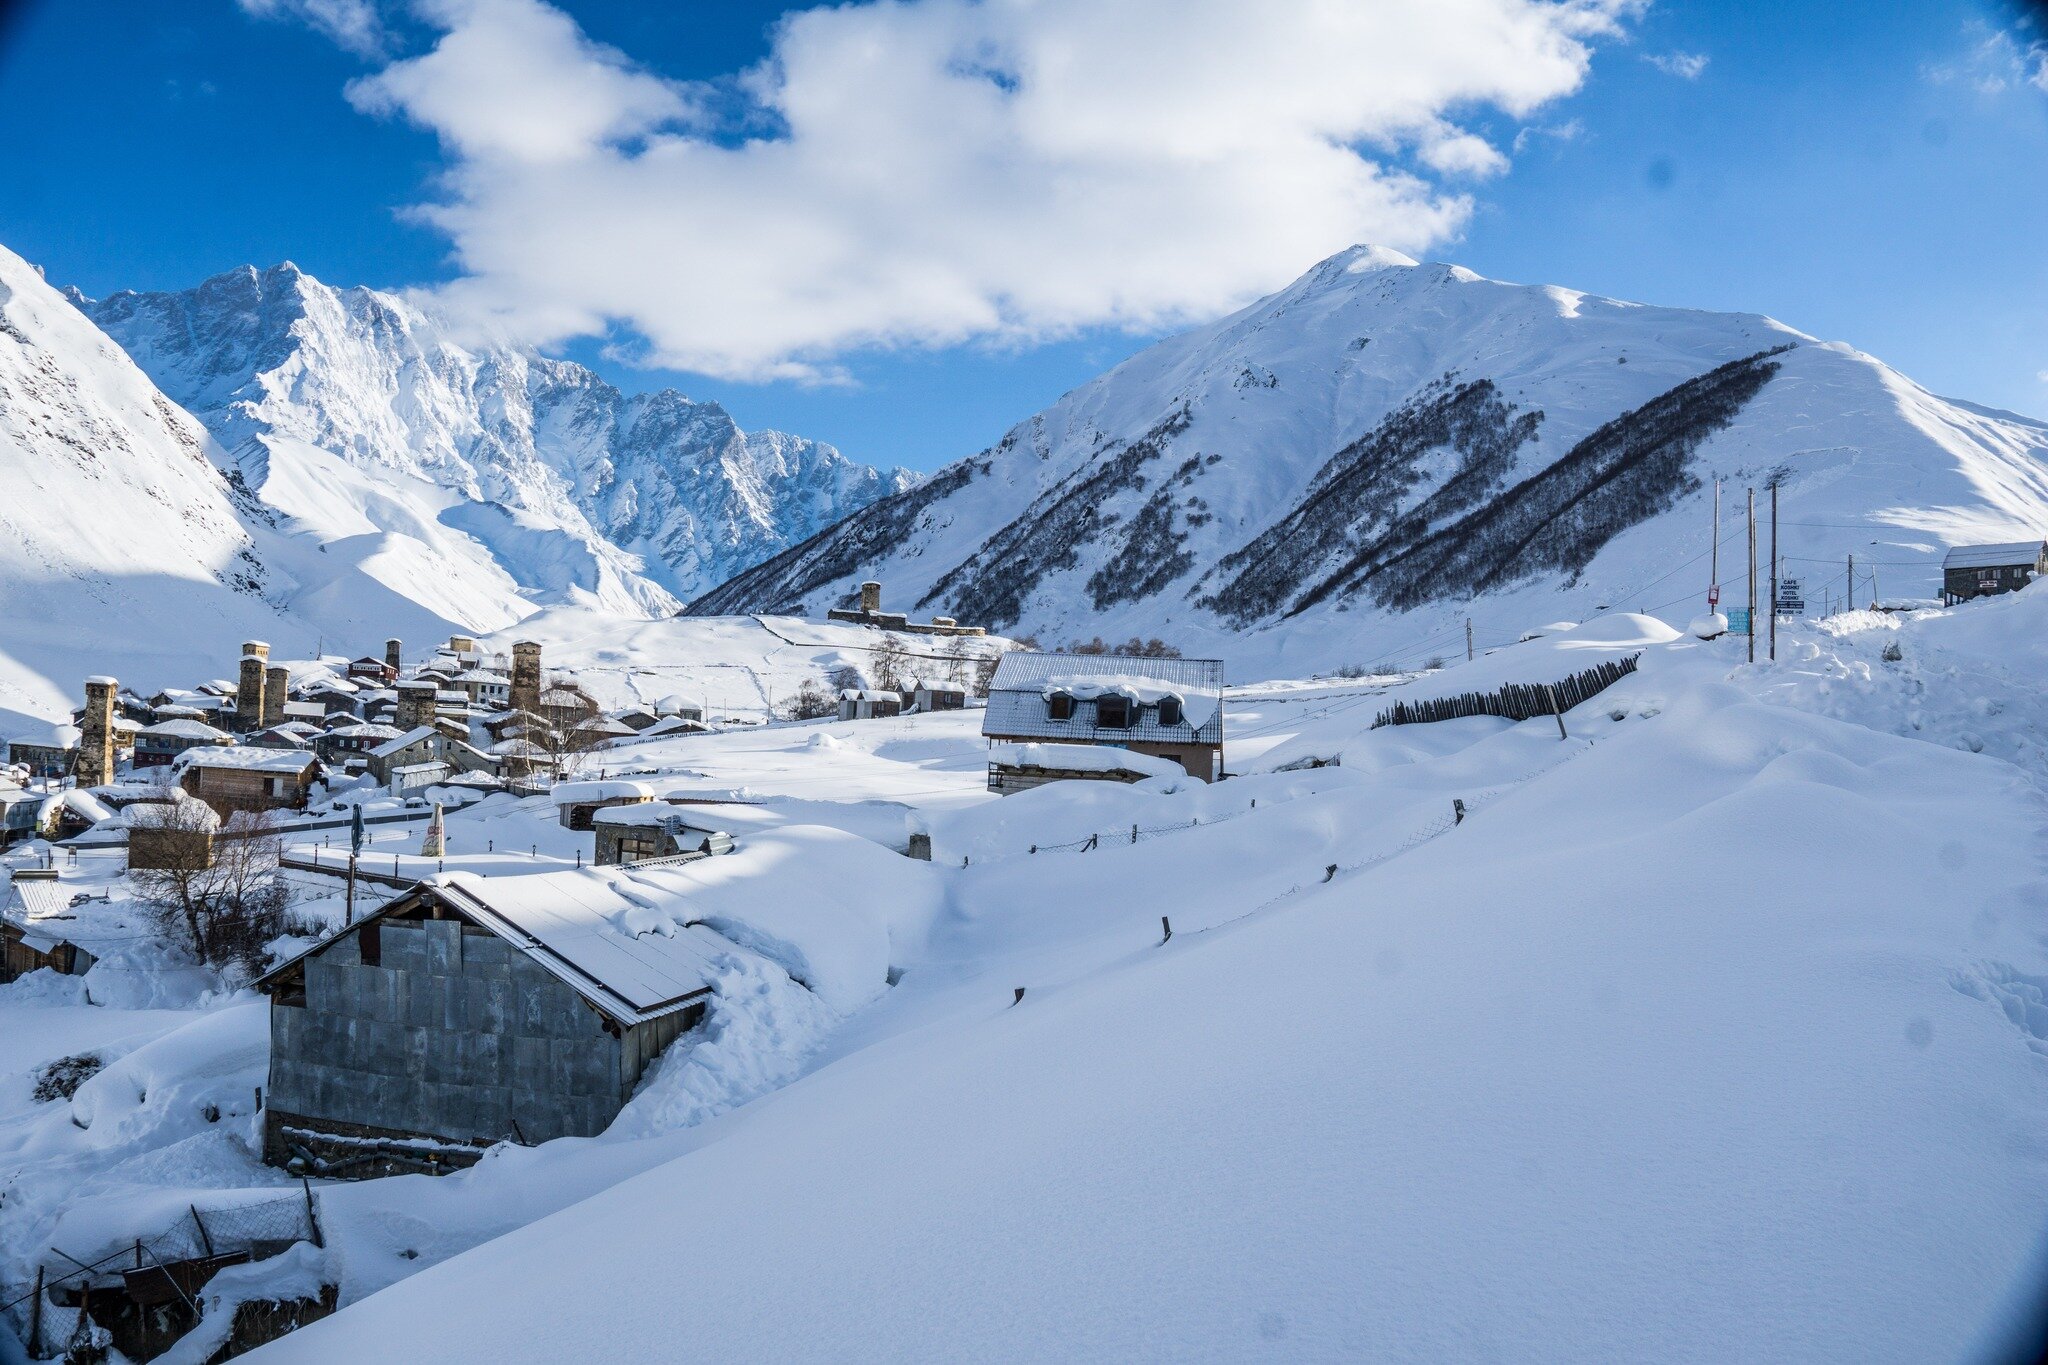 Neuer Blogeintrag - Skitouren in Swanetien - Link in Bio
Erfahrungen, Touren, Tracks und Tipps f&uuml;r eine Skitourenreise in den wilden Kaukasus

#alpinmanufaktur 
#tourenschmiede 
@weguideyou 
@thisisskitouring  @volklskis @markerproducts @dalbell